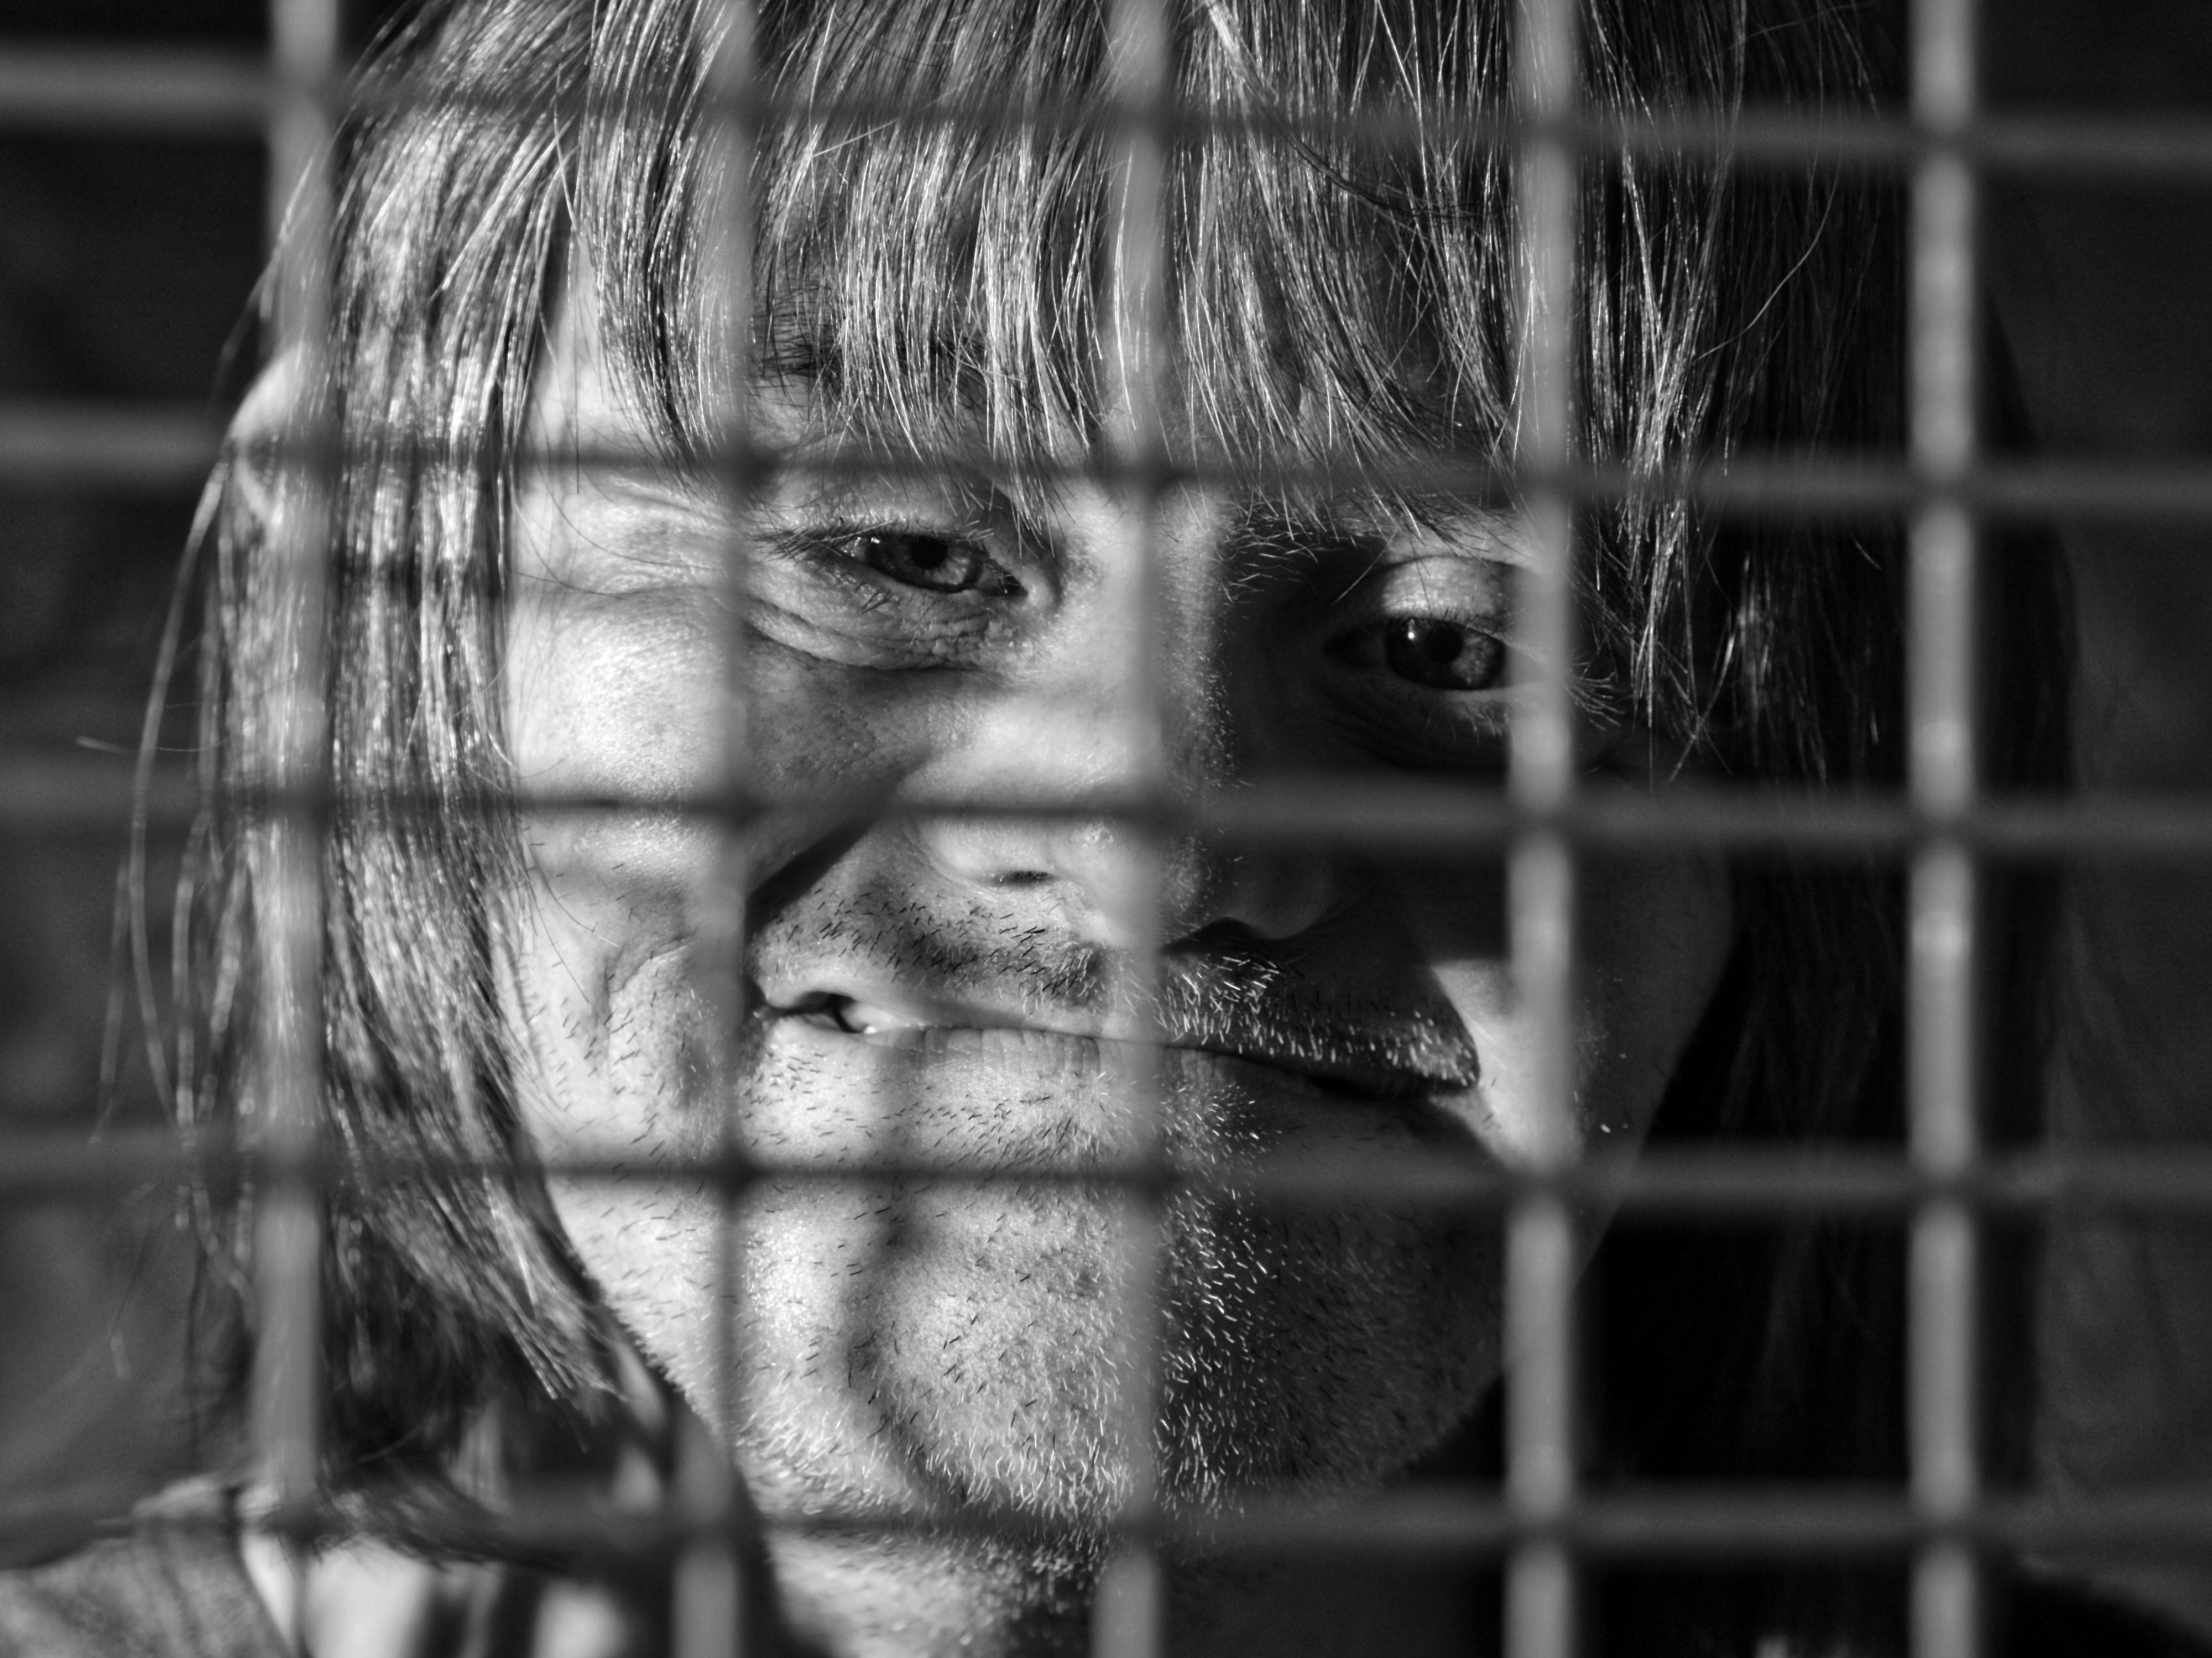 Ein Mann - mit phänotypischen Zügen der Trisomie 21 - lächelt, wobei er hinter einem Gitter zu sehen ist. 